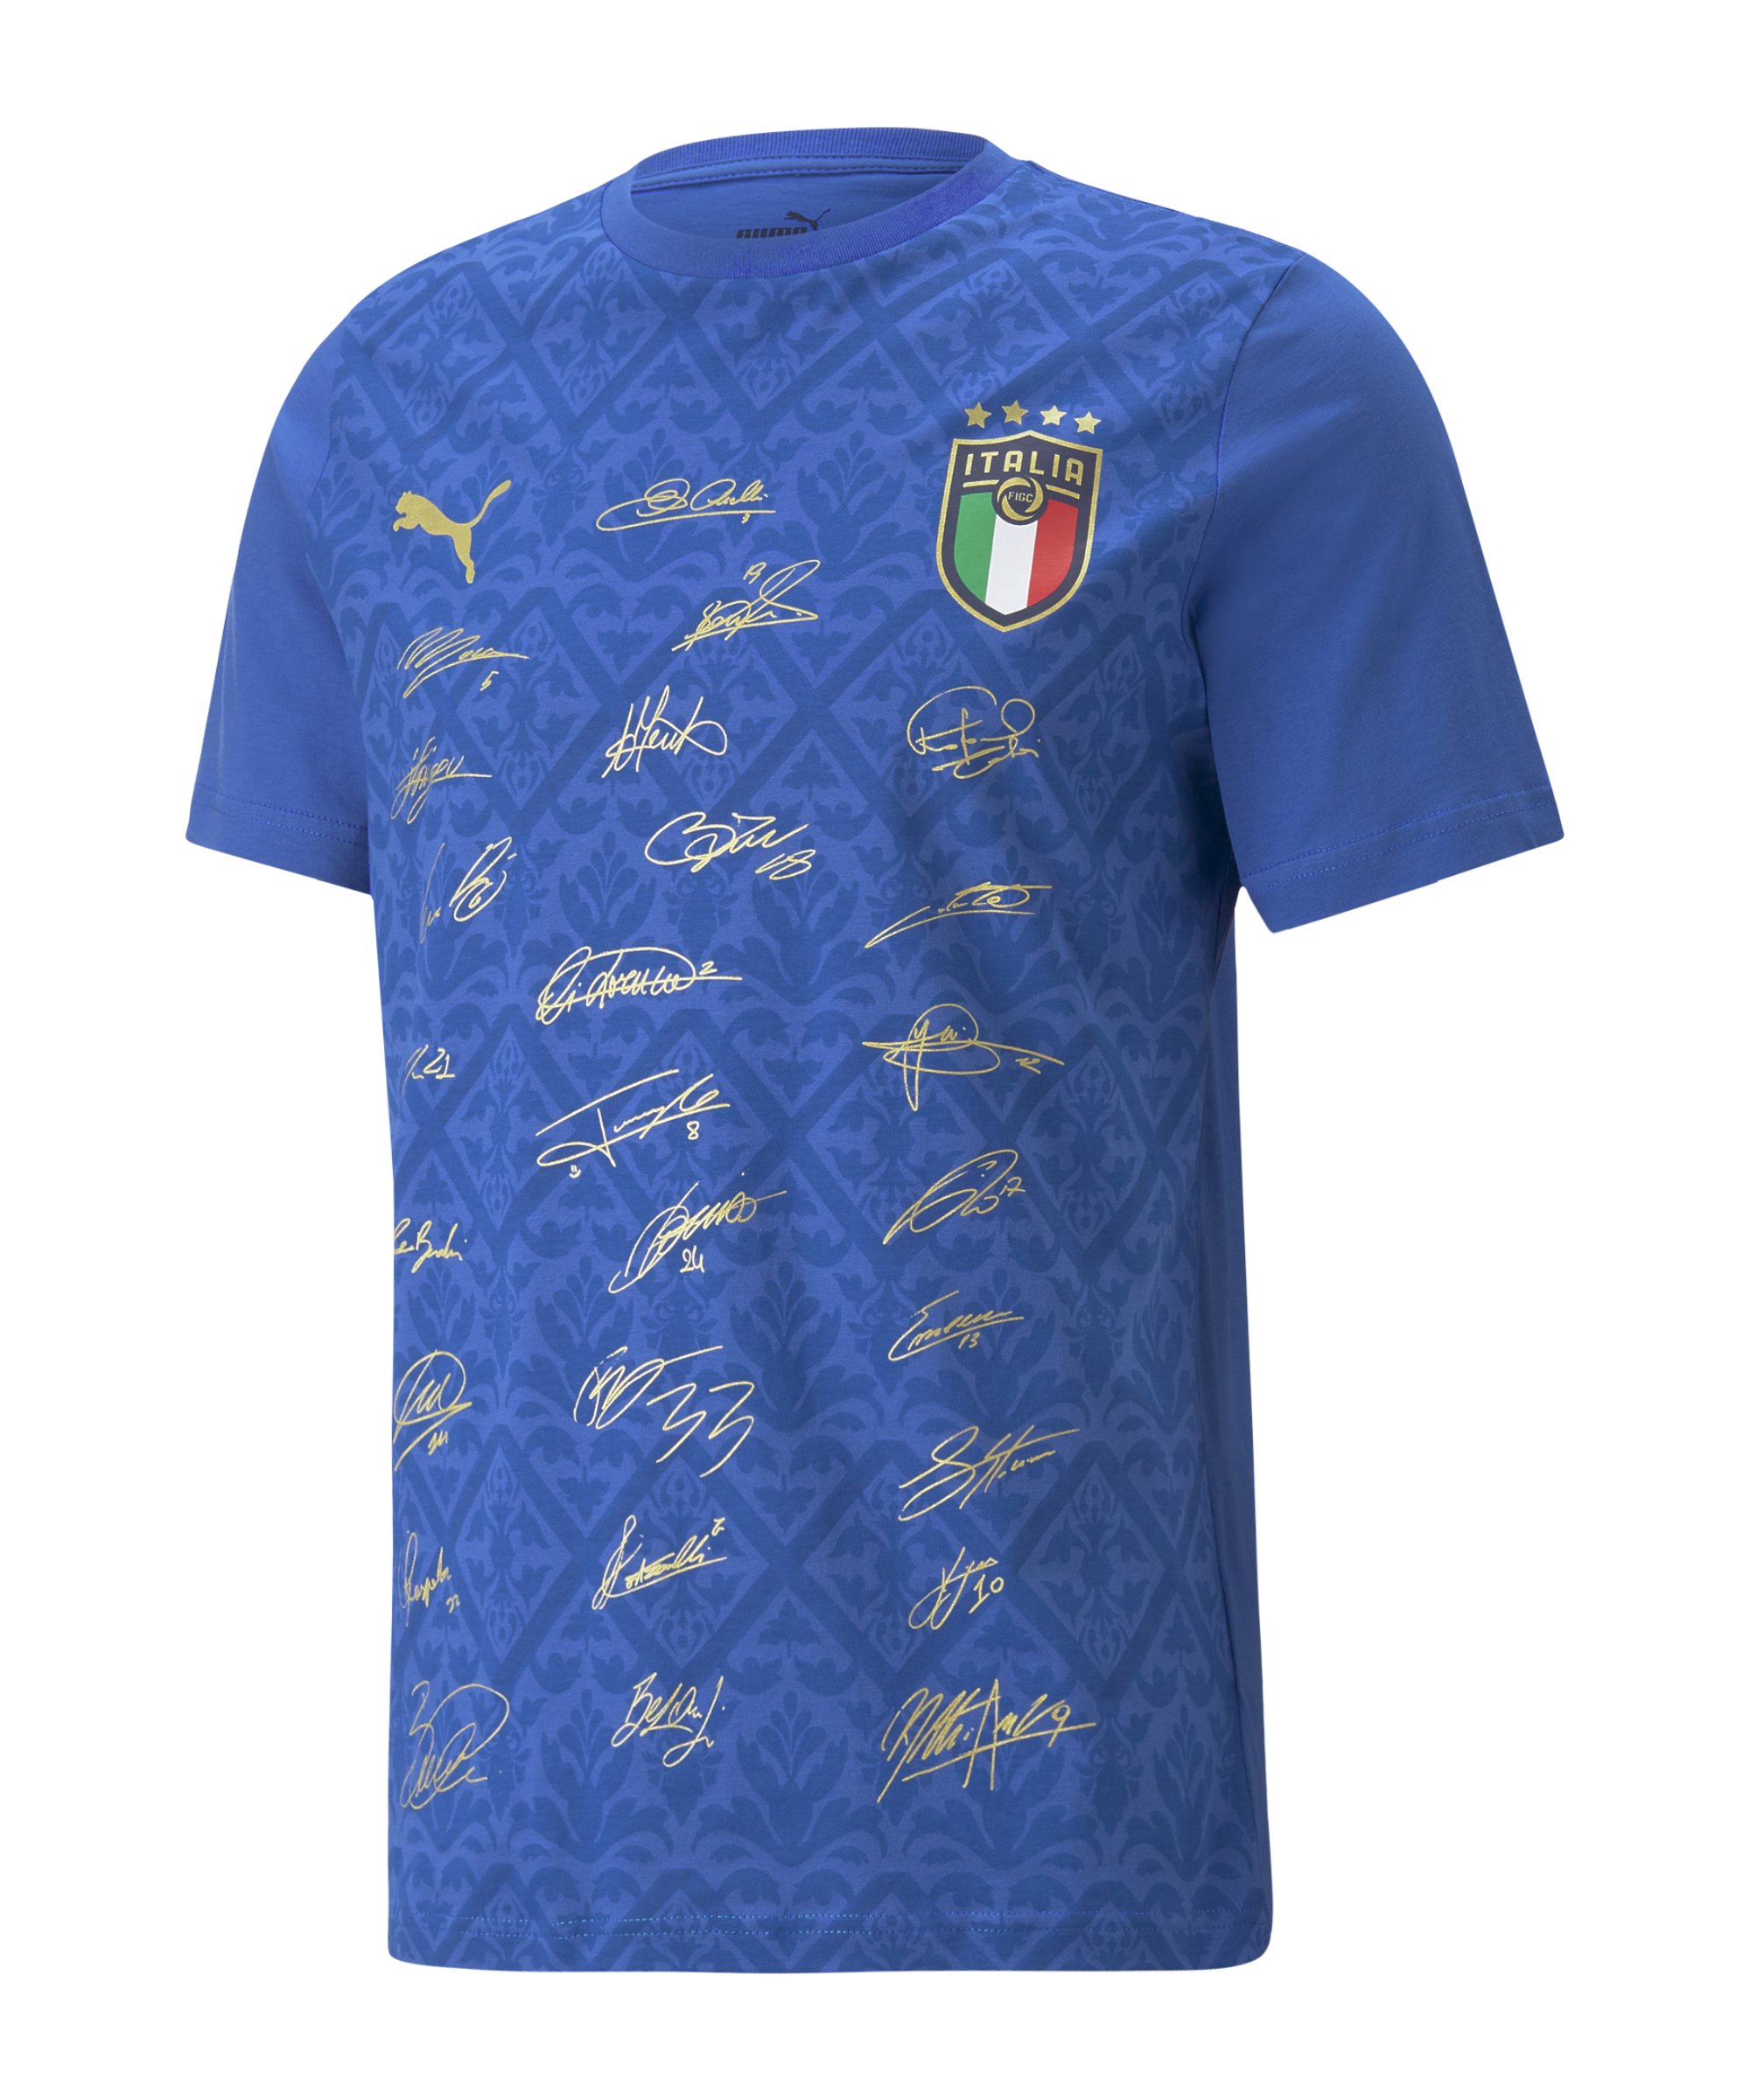 PUMA Italien Signature Winner T-Shirt Blau F04 - blau